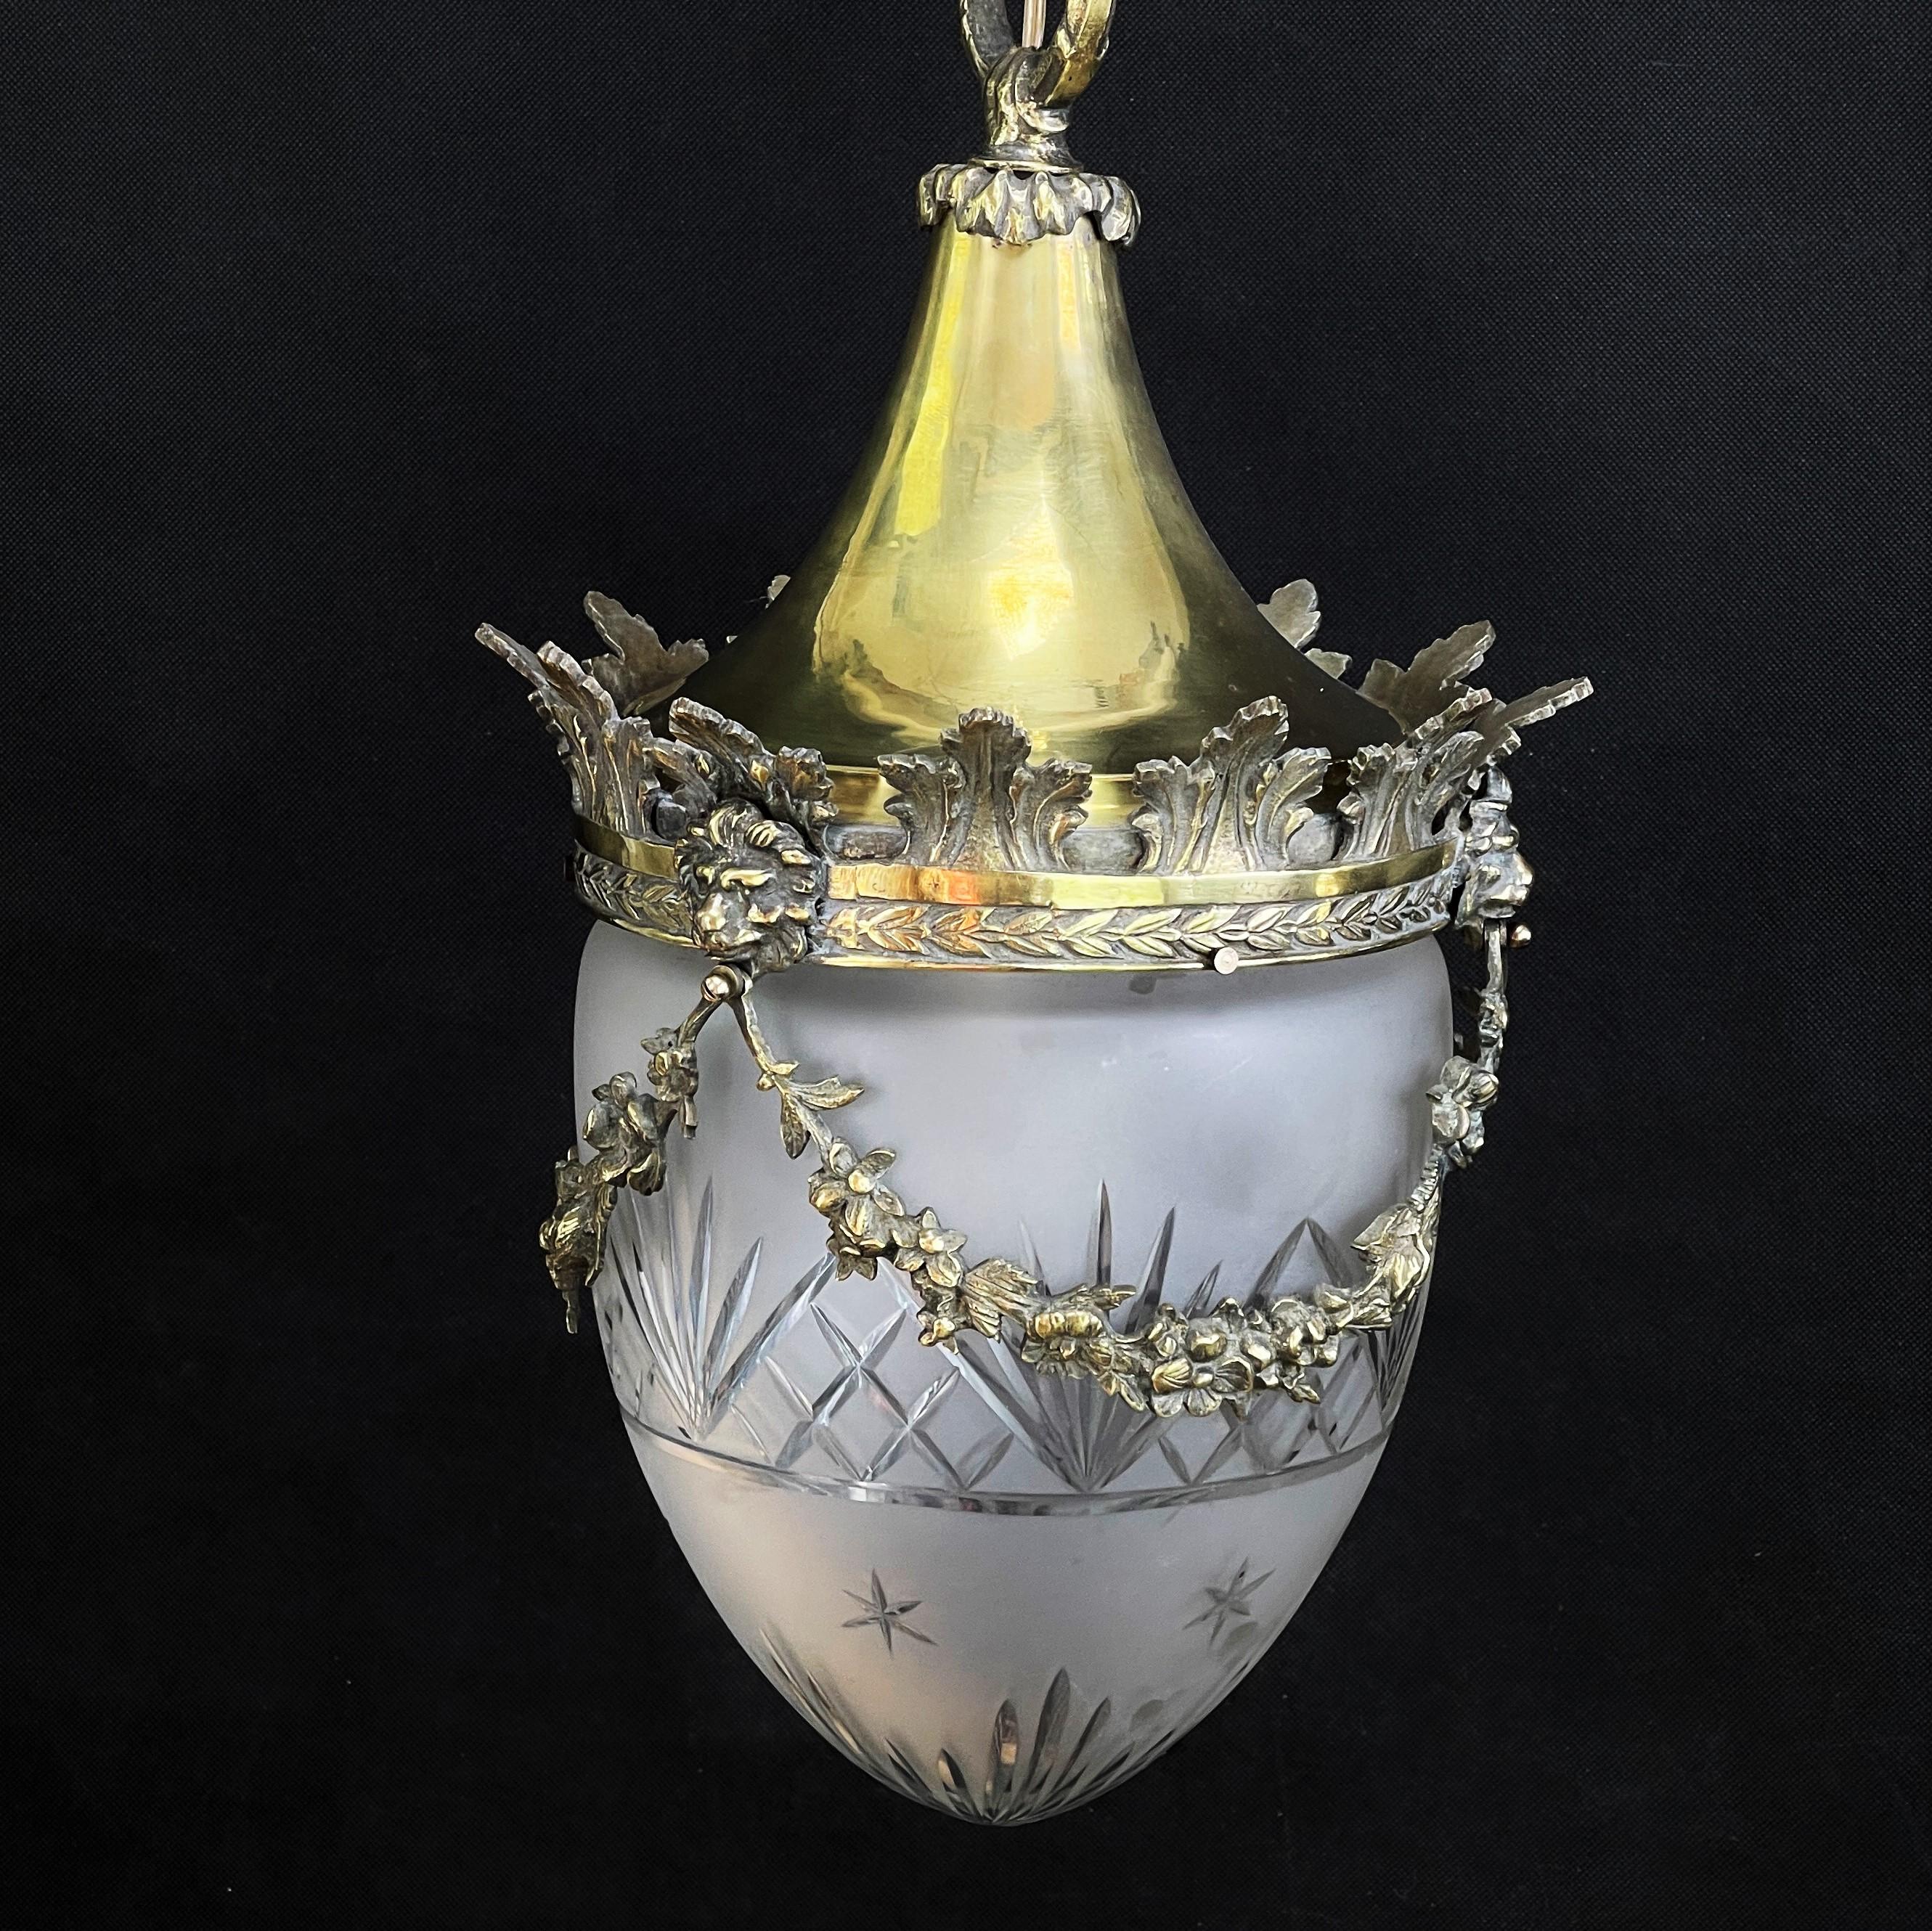 Cette belle et lourde lampe art nouveau date d'environ 1910. Le verre est satiné et la monture est en bronze et laiton. Cette lampe impressionnante donne une lumière agréable. 

Elle dispose d'un point de combustion avec une douille E27.
   